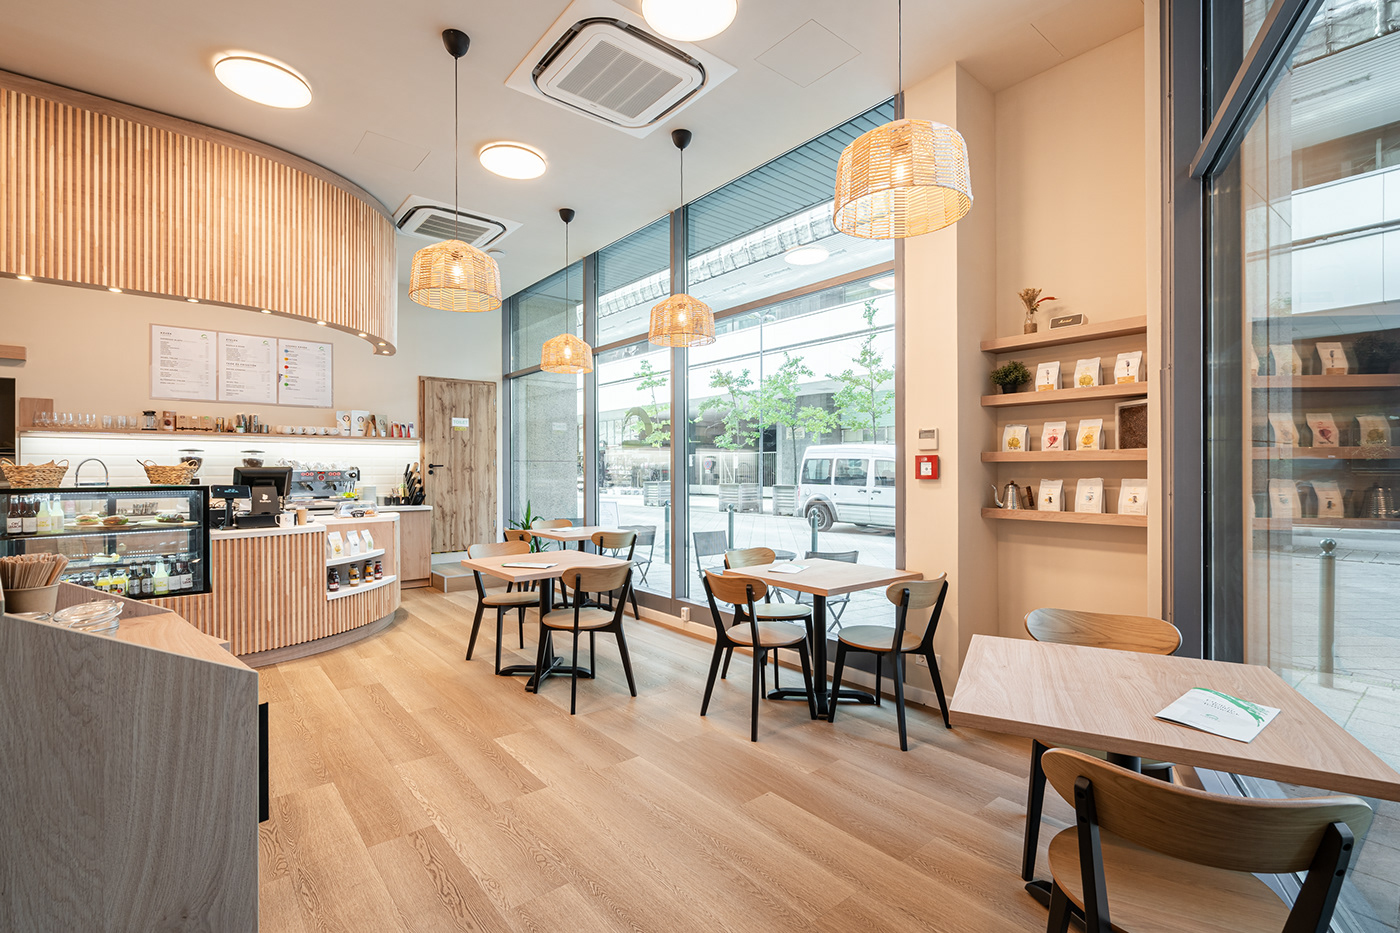 interiordesign Interior design cafe pivot270